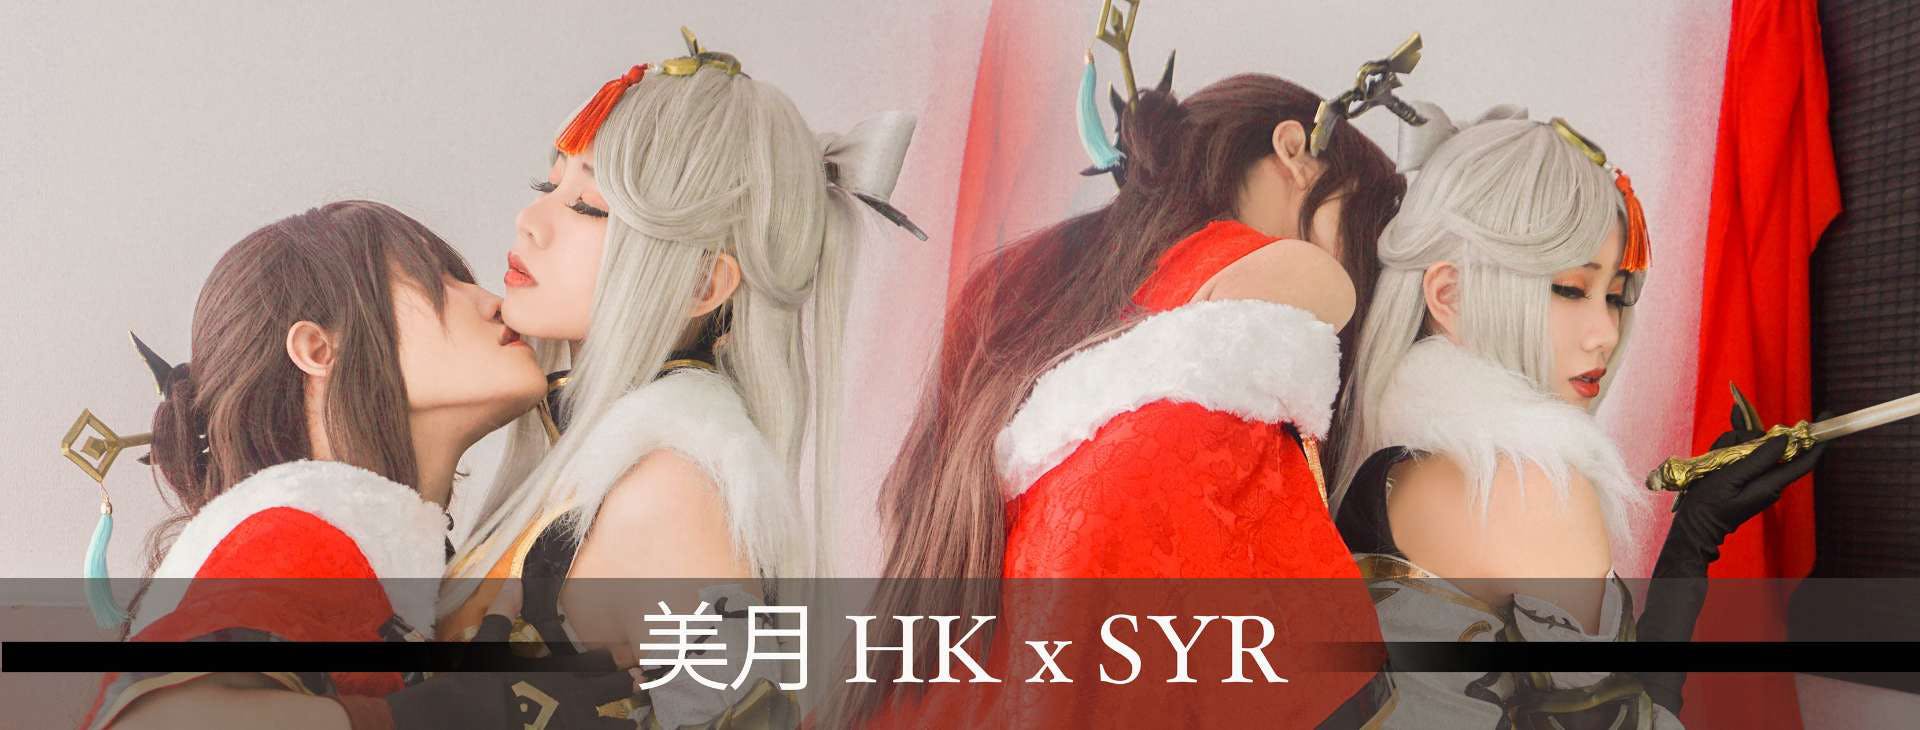 美月 HK X SYR's banner